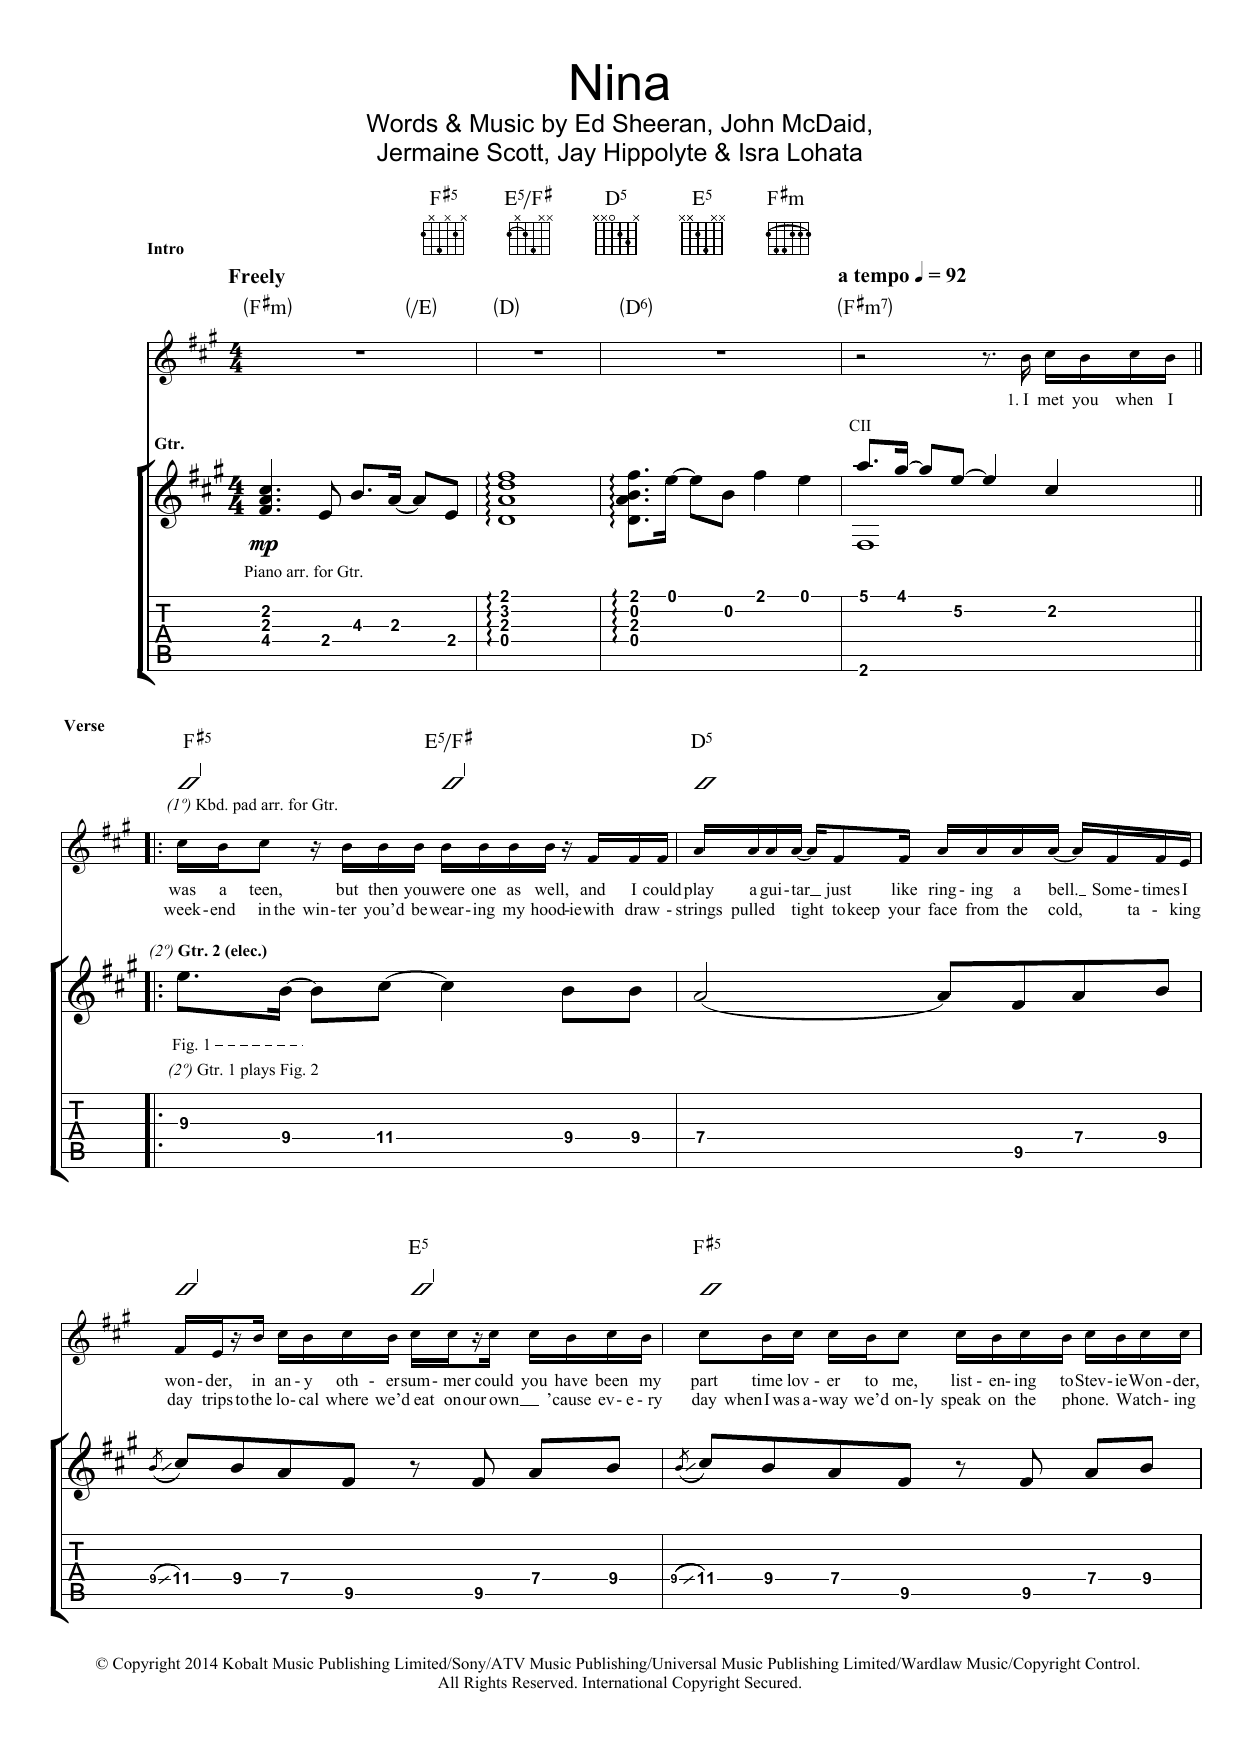 Ed Sheeran Nina Sheet Music Notes & Chords for Lyrics & Chords - Download or Print PDF